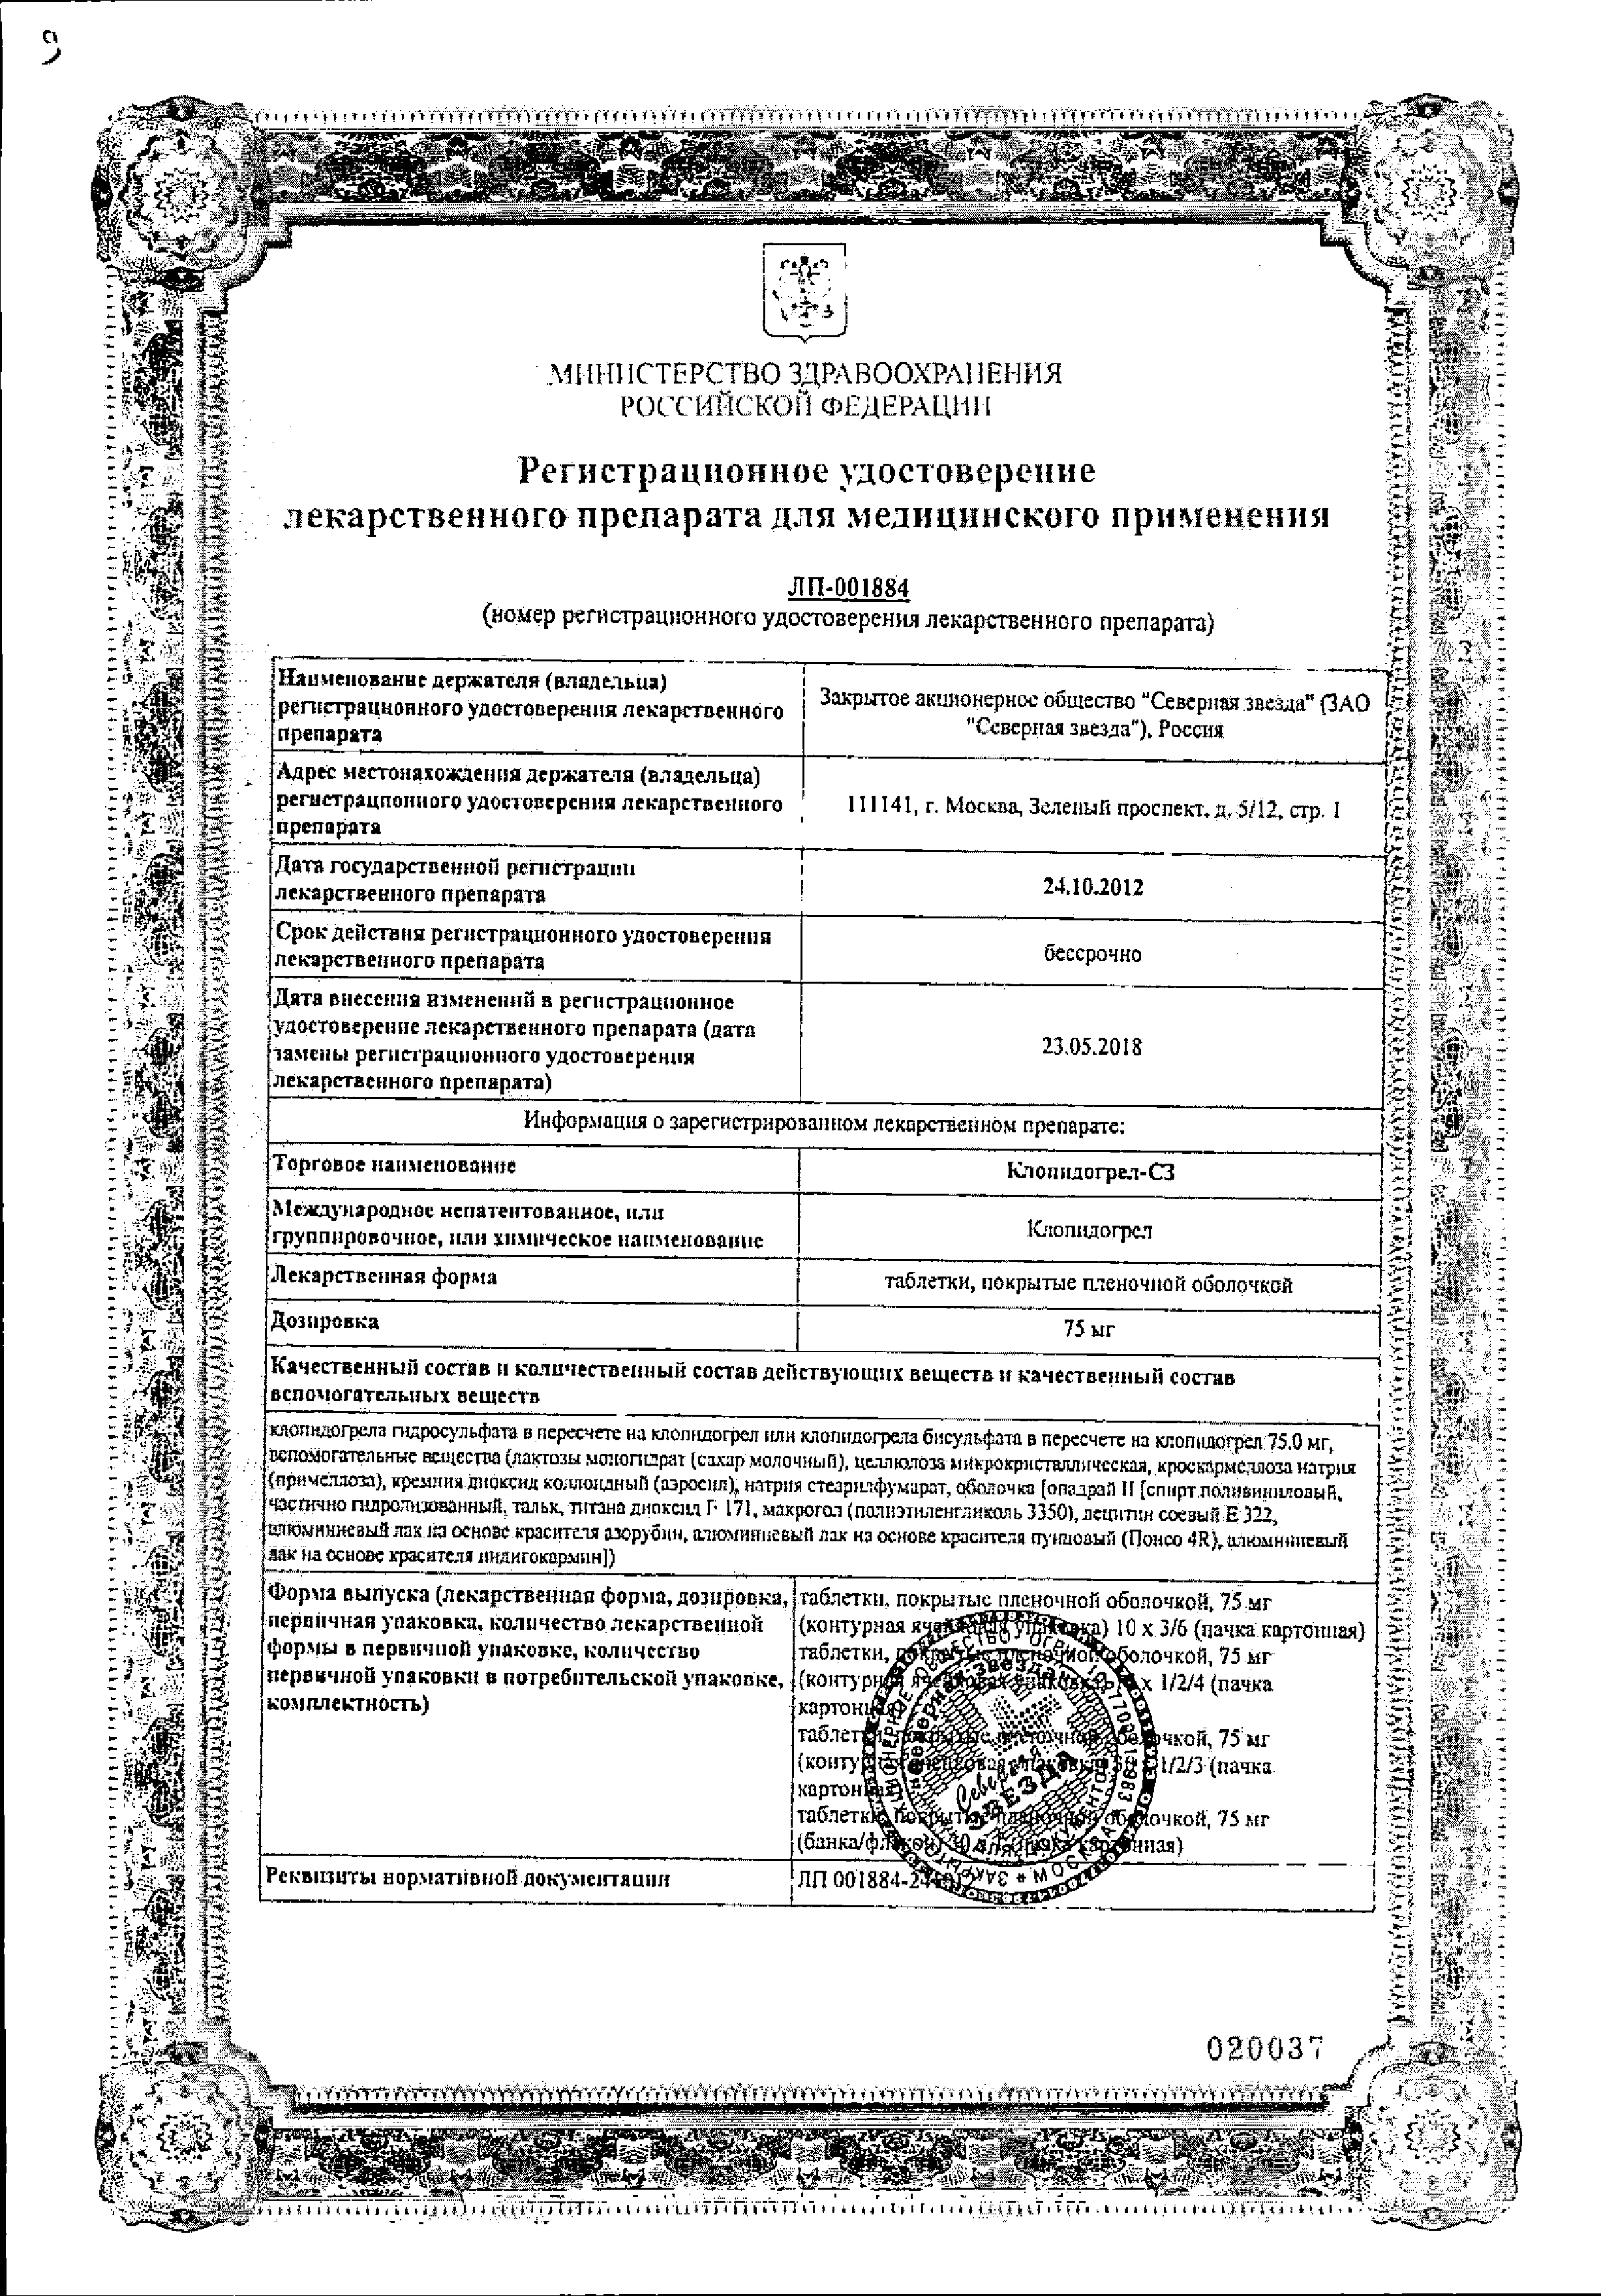 Клопидогрел-СЗ сертификат